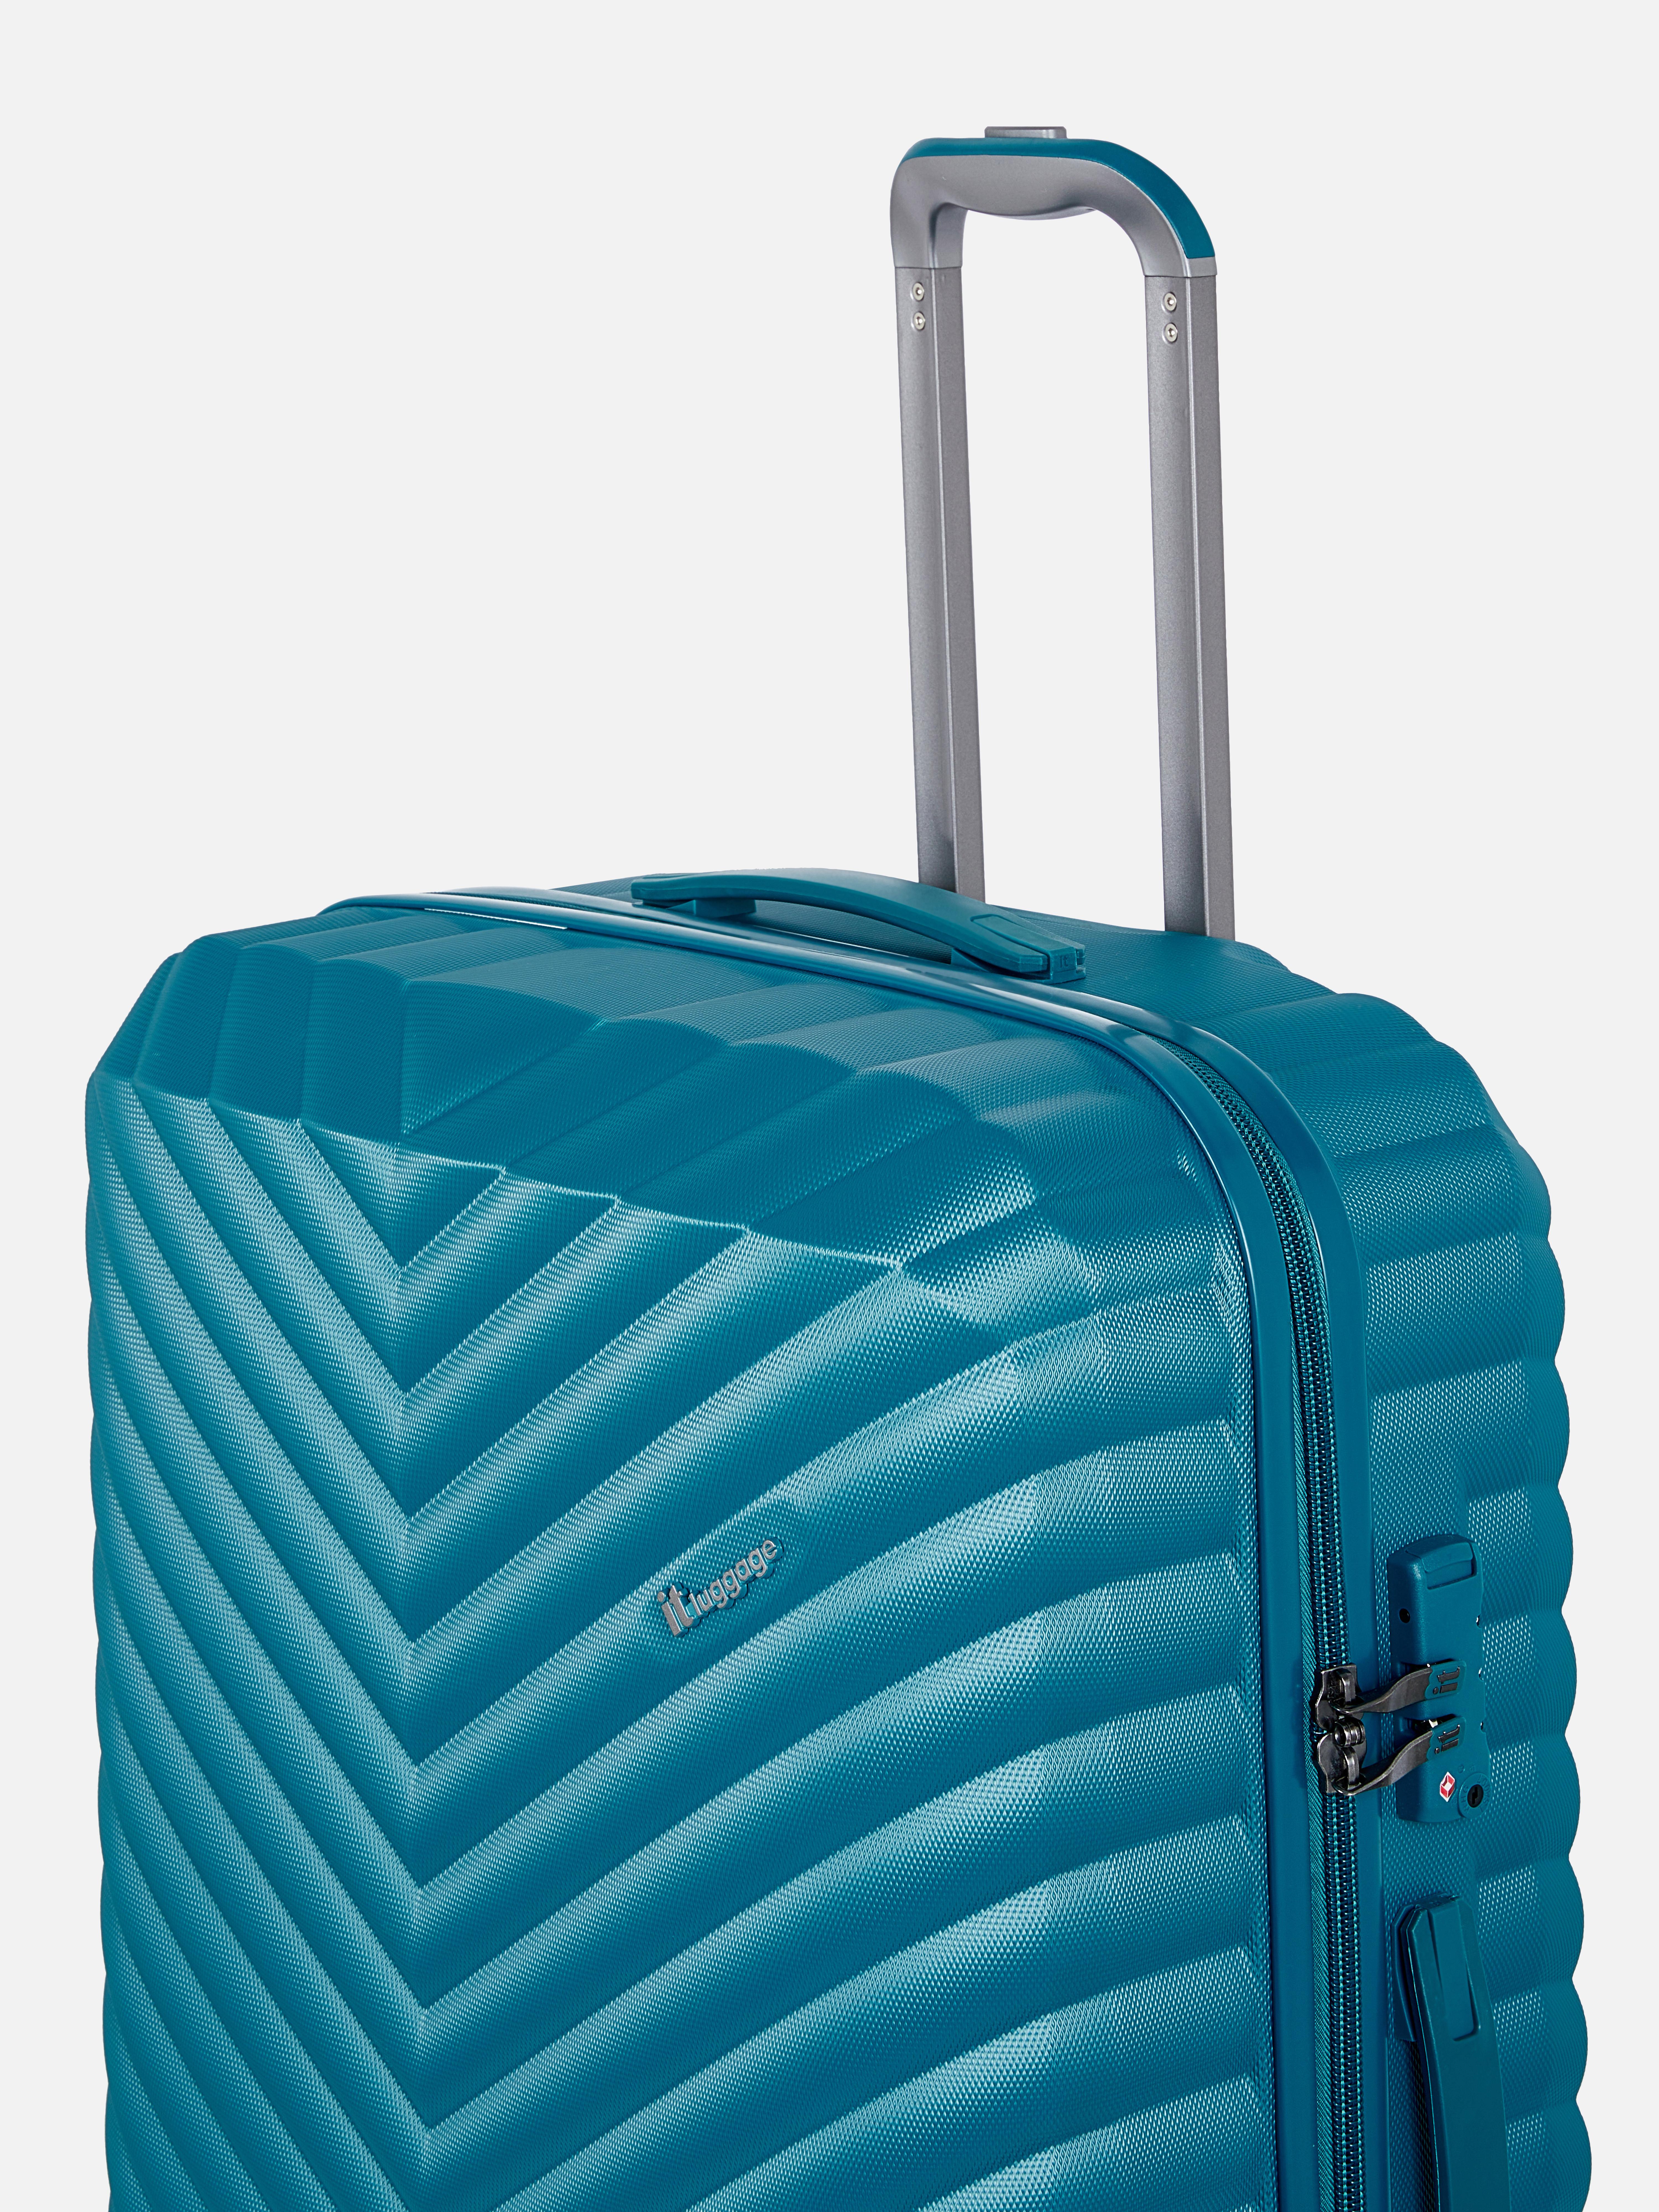 it Luggage Hard Shell Suitcase